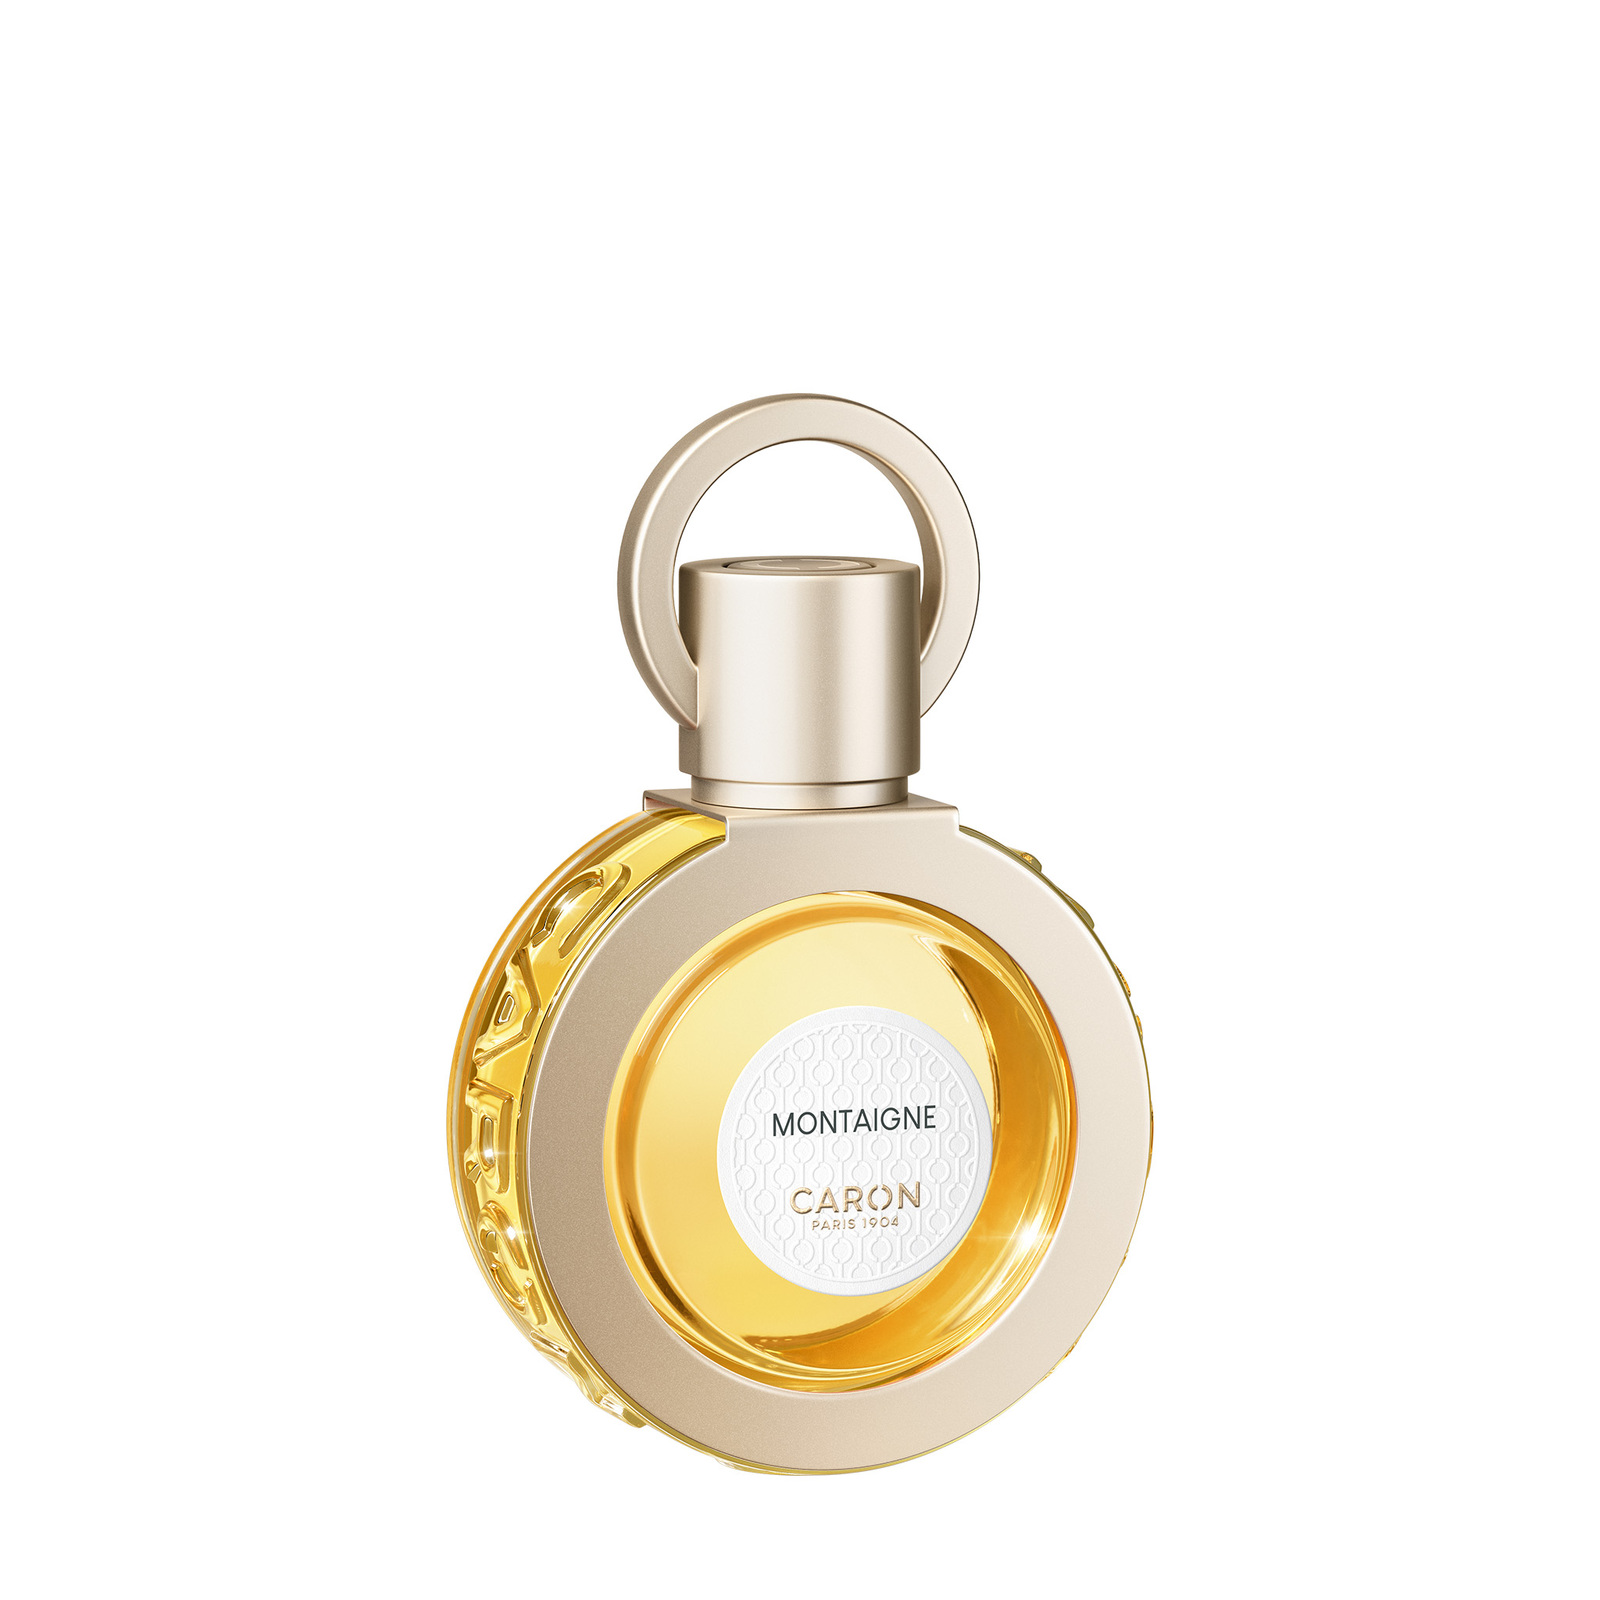 CARON Montaigne Perfume 30ml Refillable